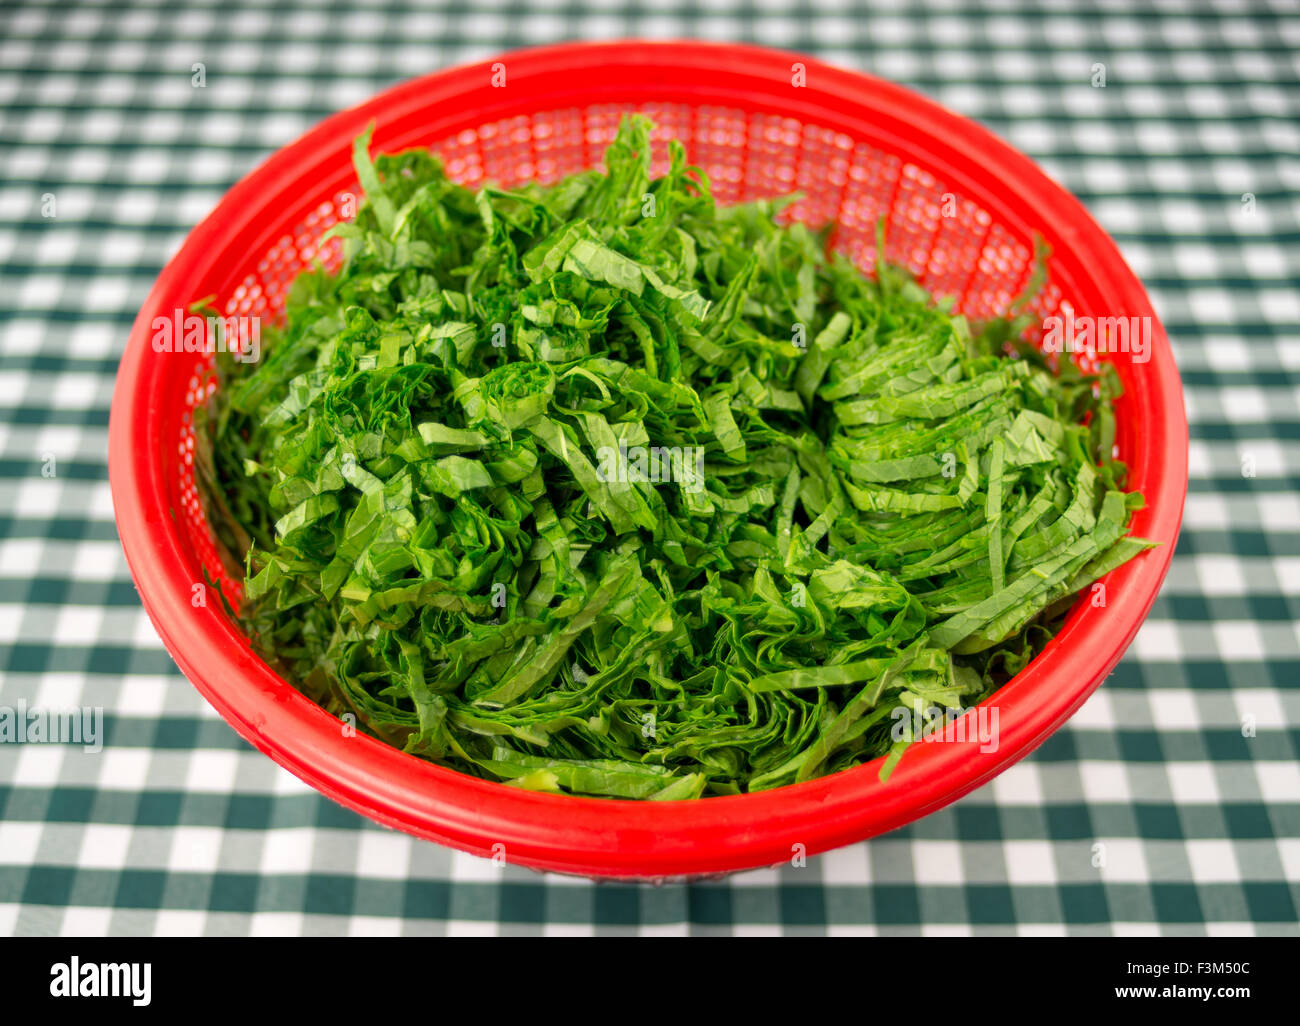 Frisch gehackte rohe Senf Blätter in einer roten Sieb Schüssel gegen grün-weiß karierte Tischdecke Stockfoto